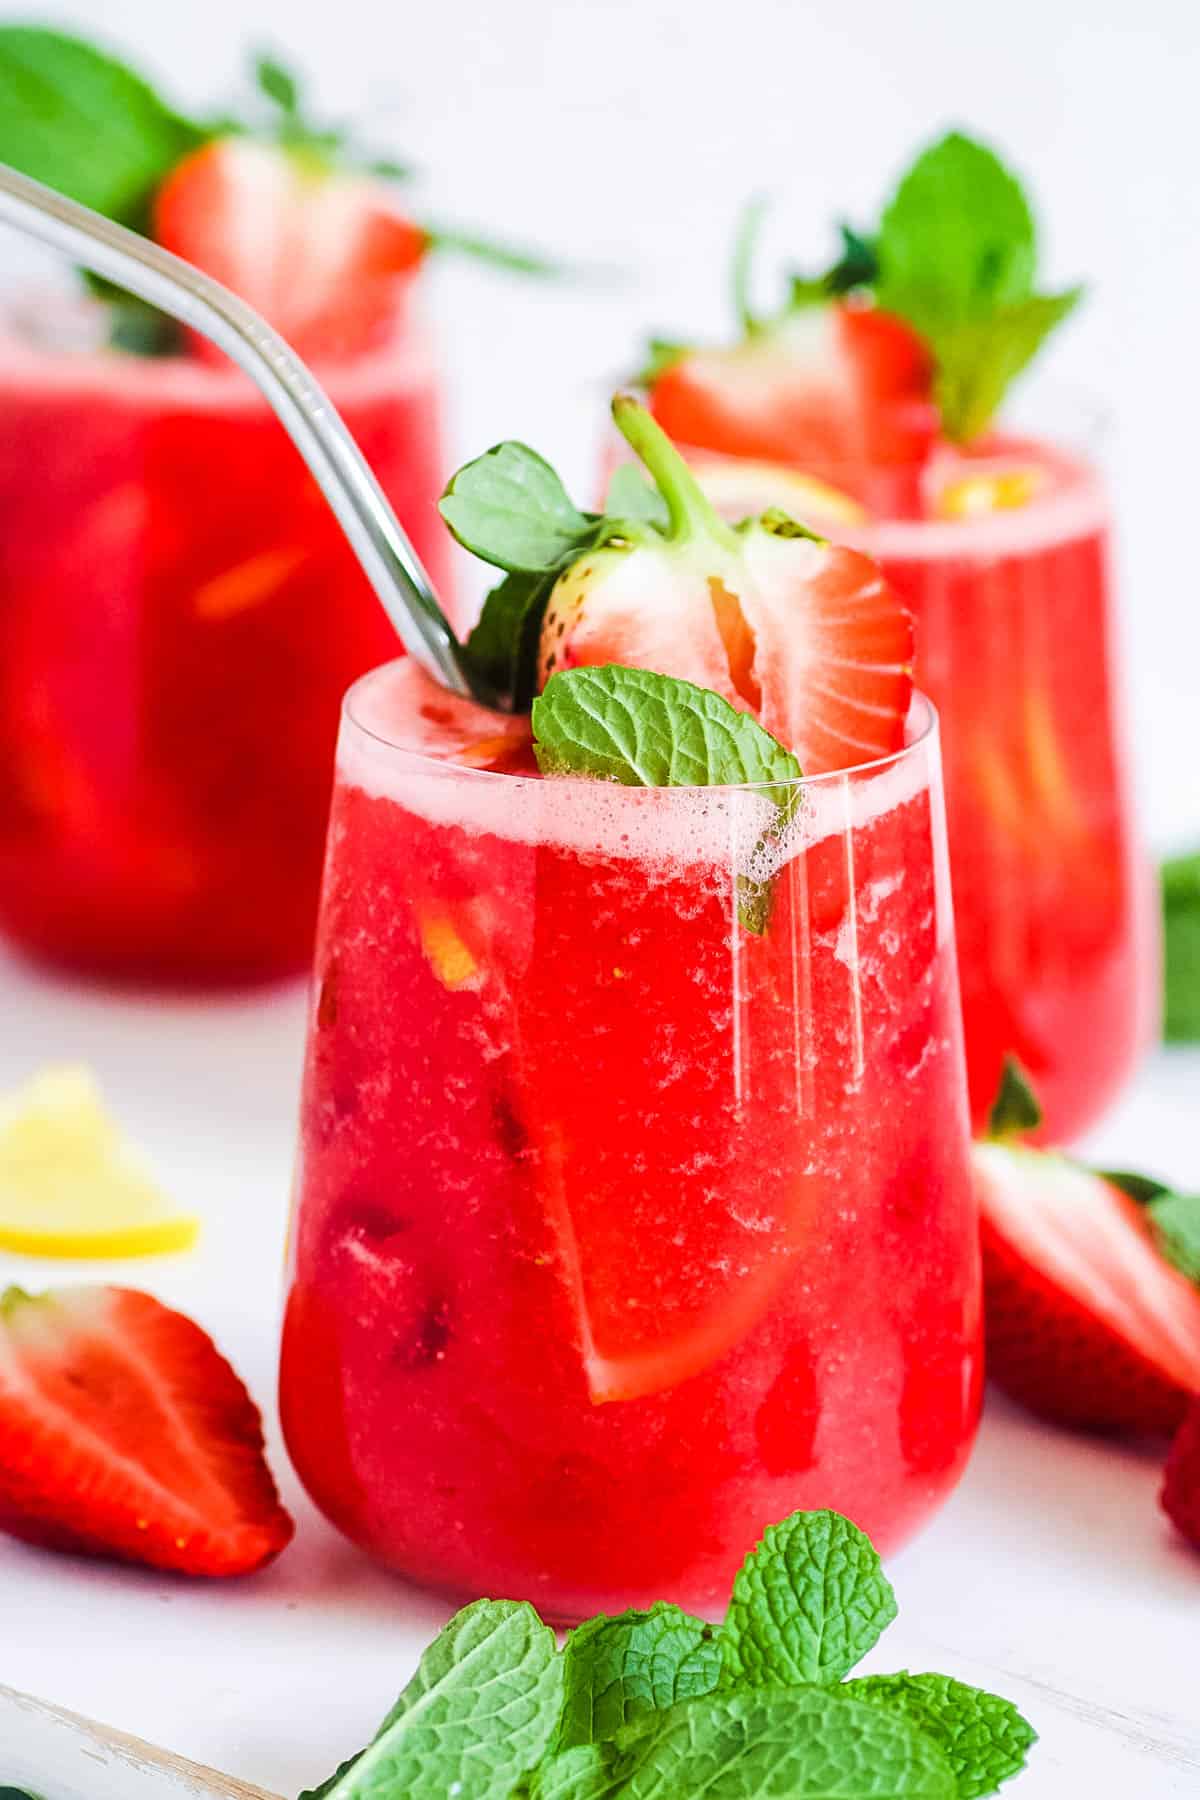 Χυμός φράουλας σε ποτήρι με καλαμάκι, γαρνιρισμένος με φρέσκες φράουλες και δυόσμο.